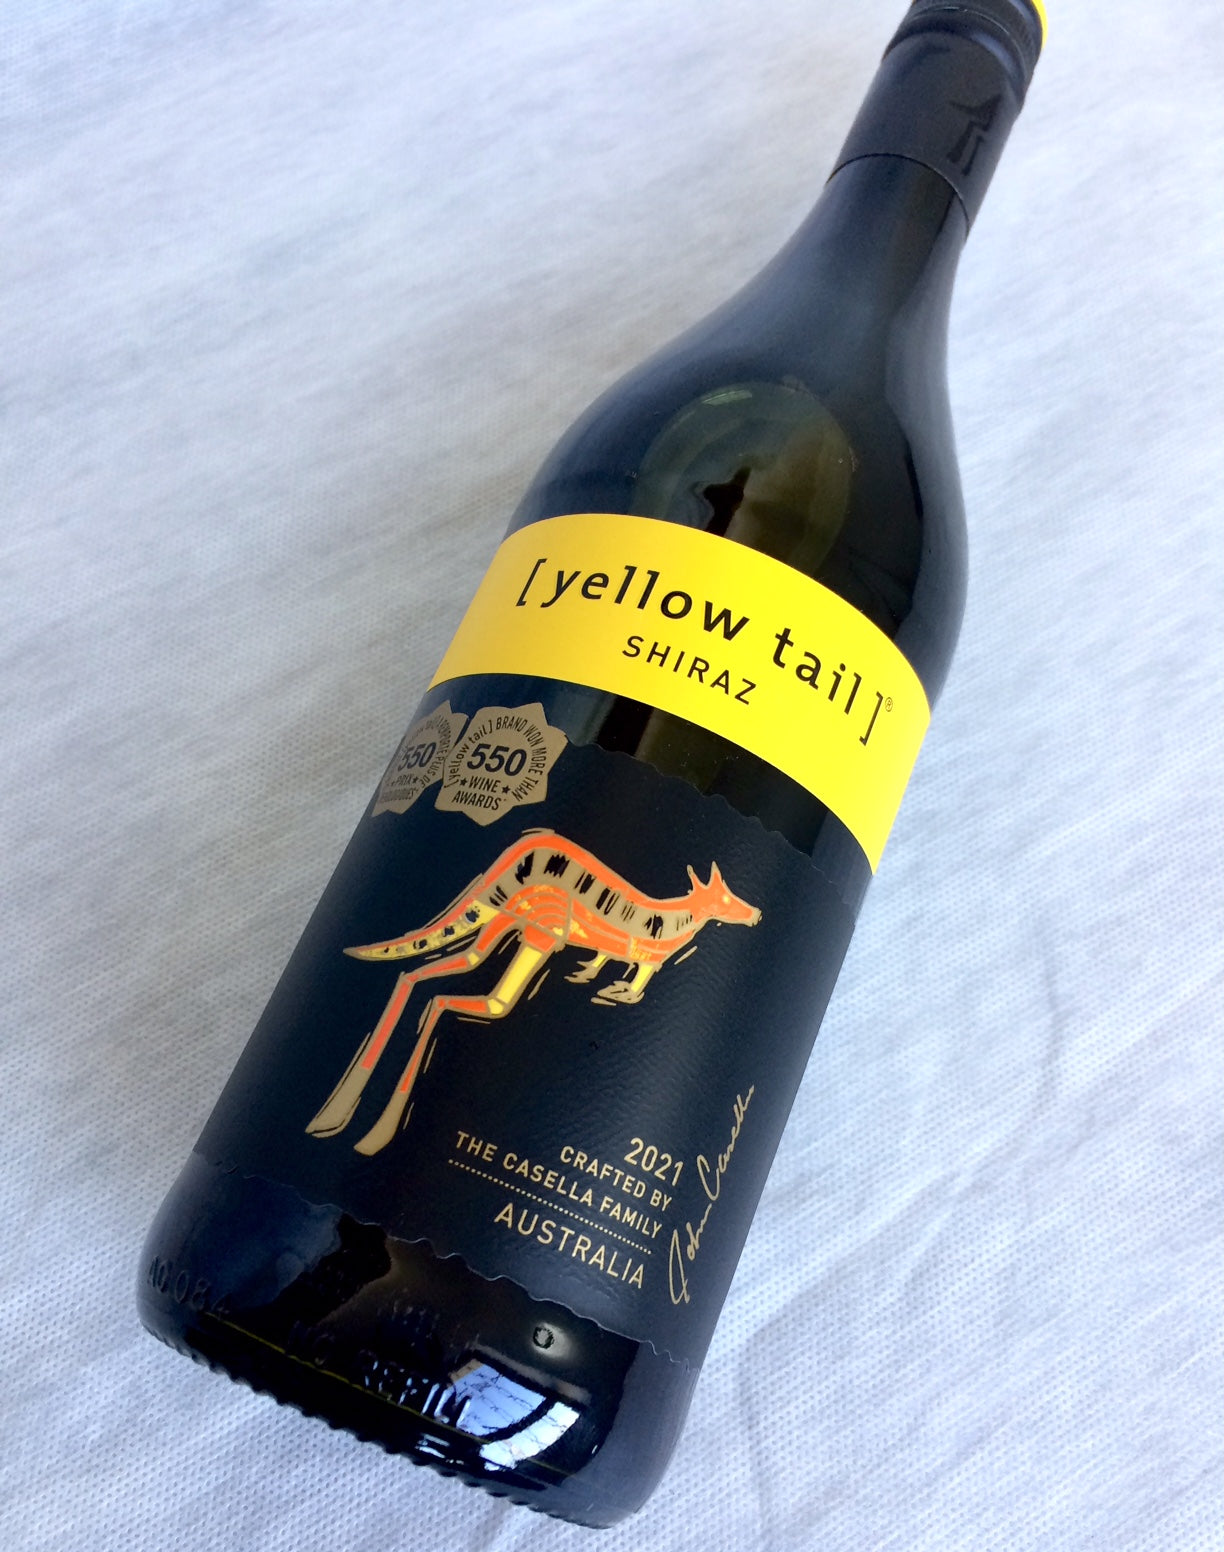 Vinho Autraliano Yellow Tail Shiraz